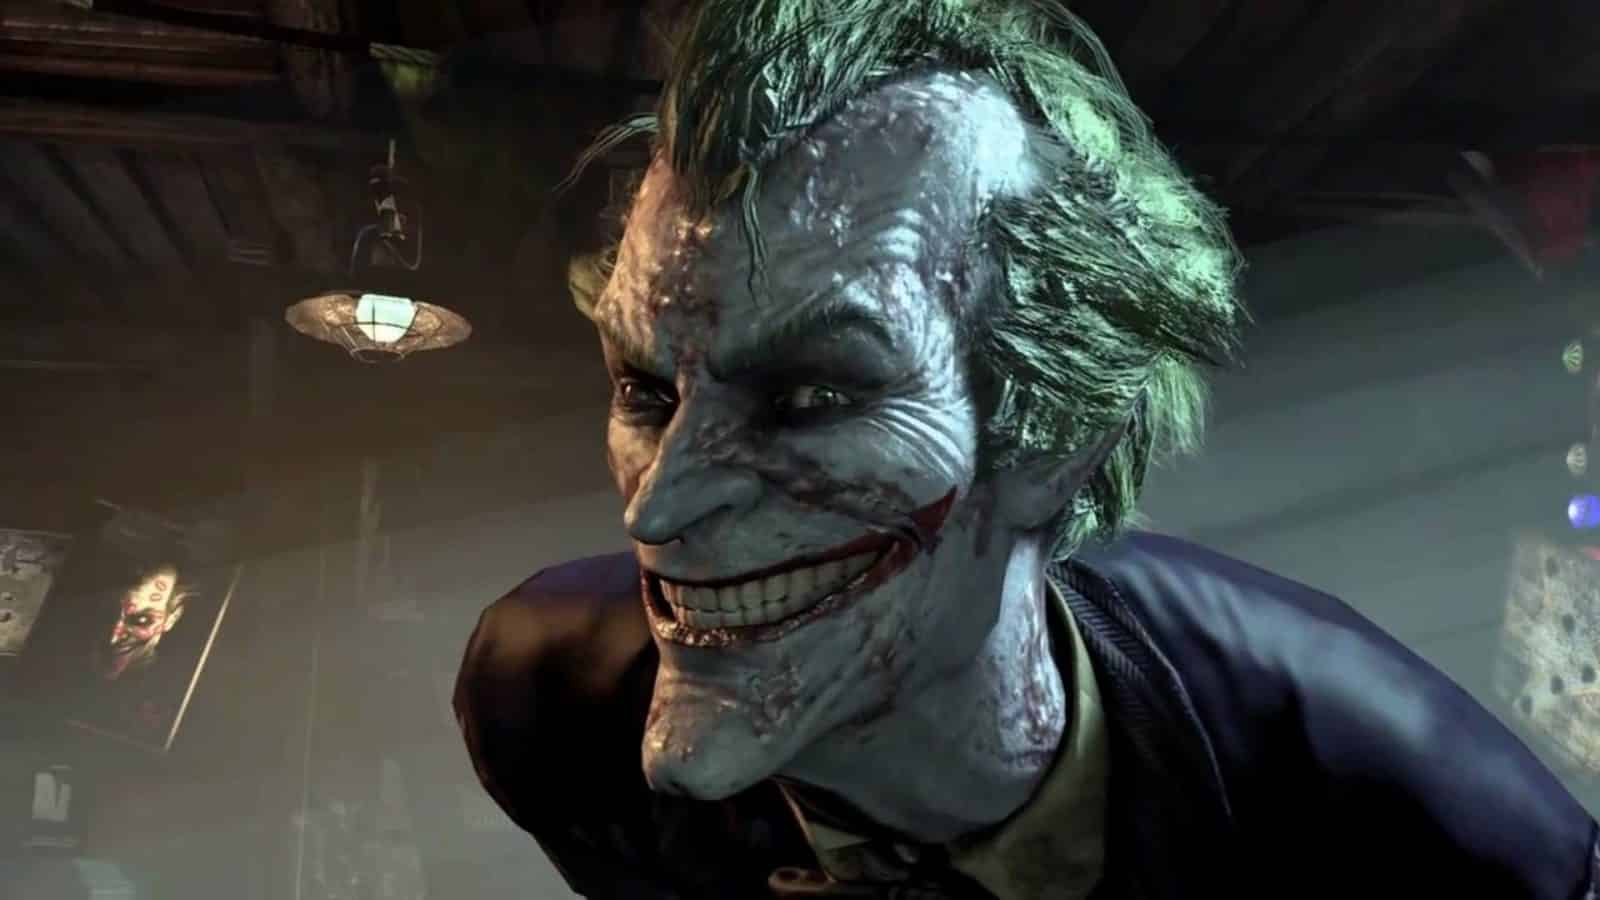 joker smiling at camera in batman